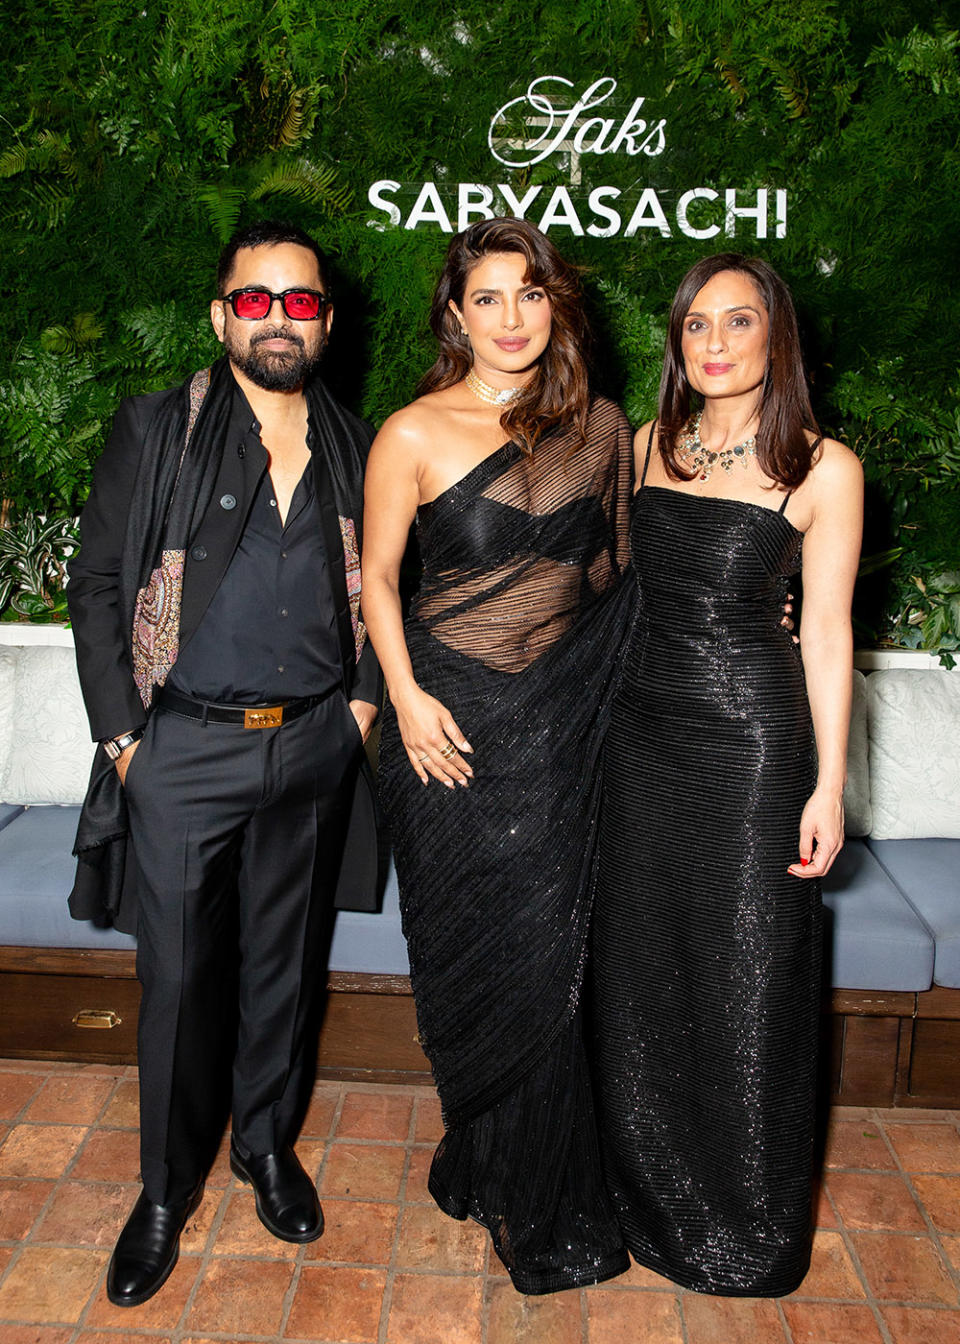 Sabyasachi Mukherjee, Priyanka Chopra, Roopal Patel at Saks and Sabyasachi Celebrate Exclusive Showcase in Beverly Hills